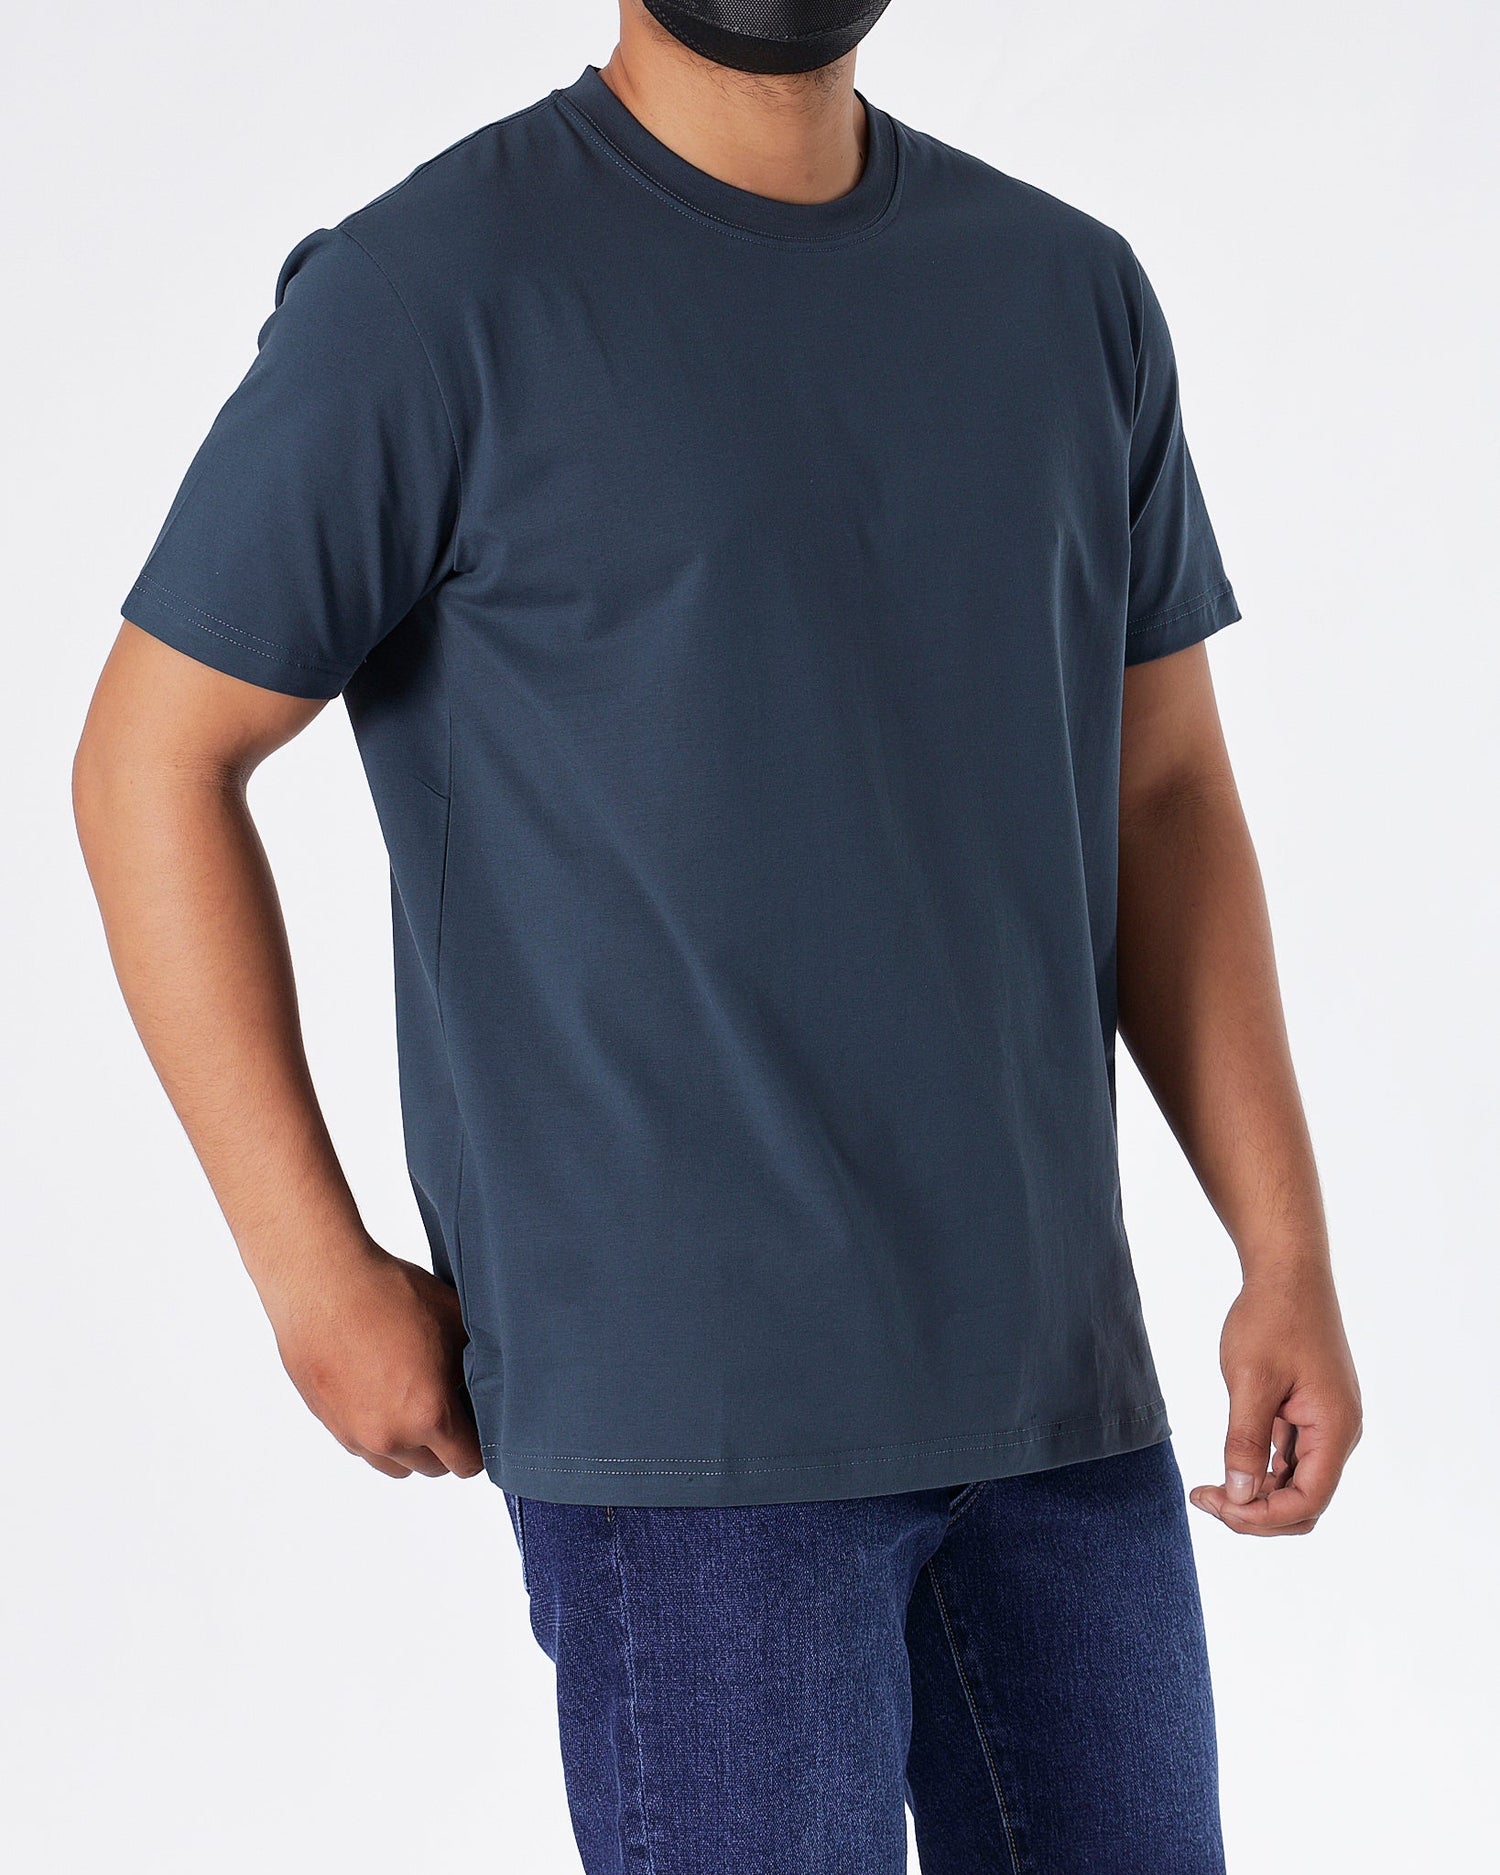 MOI OUTFIT-ABA Plain Color Men Blue T-Shirt 14.90